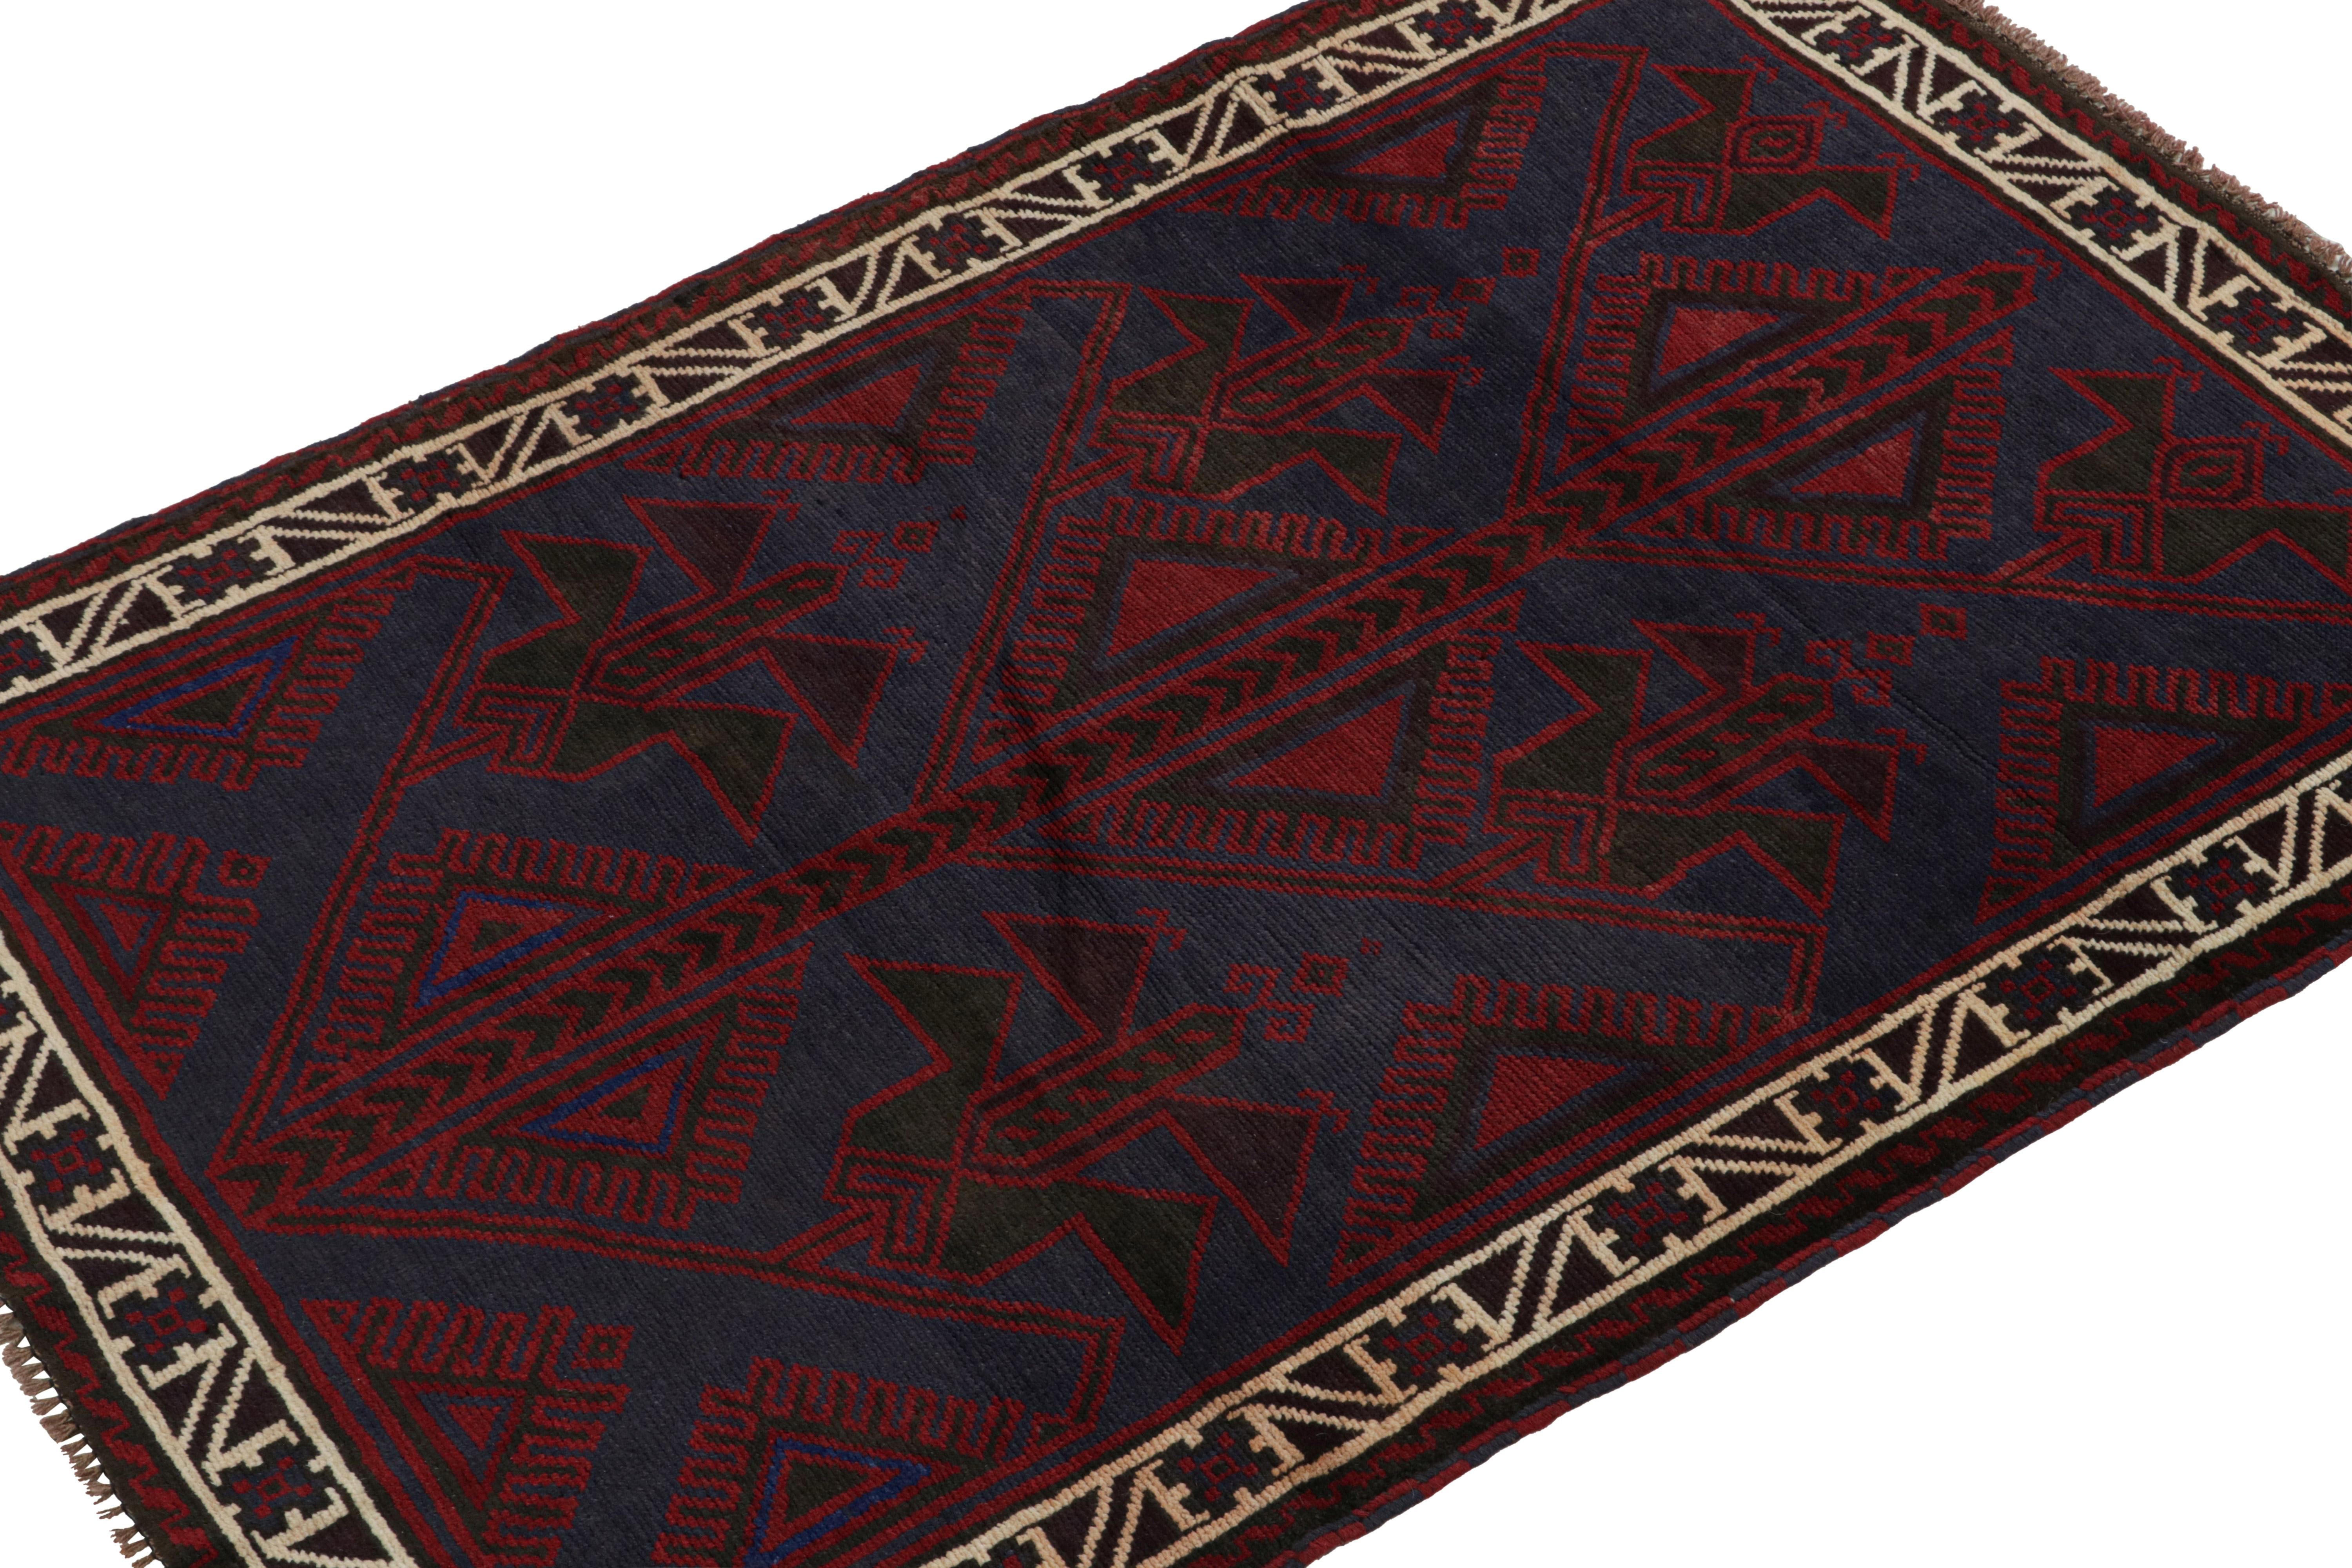 Dieser handgeknüpfte Teppich aus Wolle und Ziegenhaar (ca. 1950-1960) in der Größe von 4x6 ist eine neue Kuration von Rug & Kilim.

Über das Design: 

Dieses Stück zeichnet sich durch rote und blaue geometrische Muster und eine reiche Mäanderbordüre